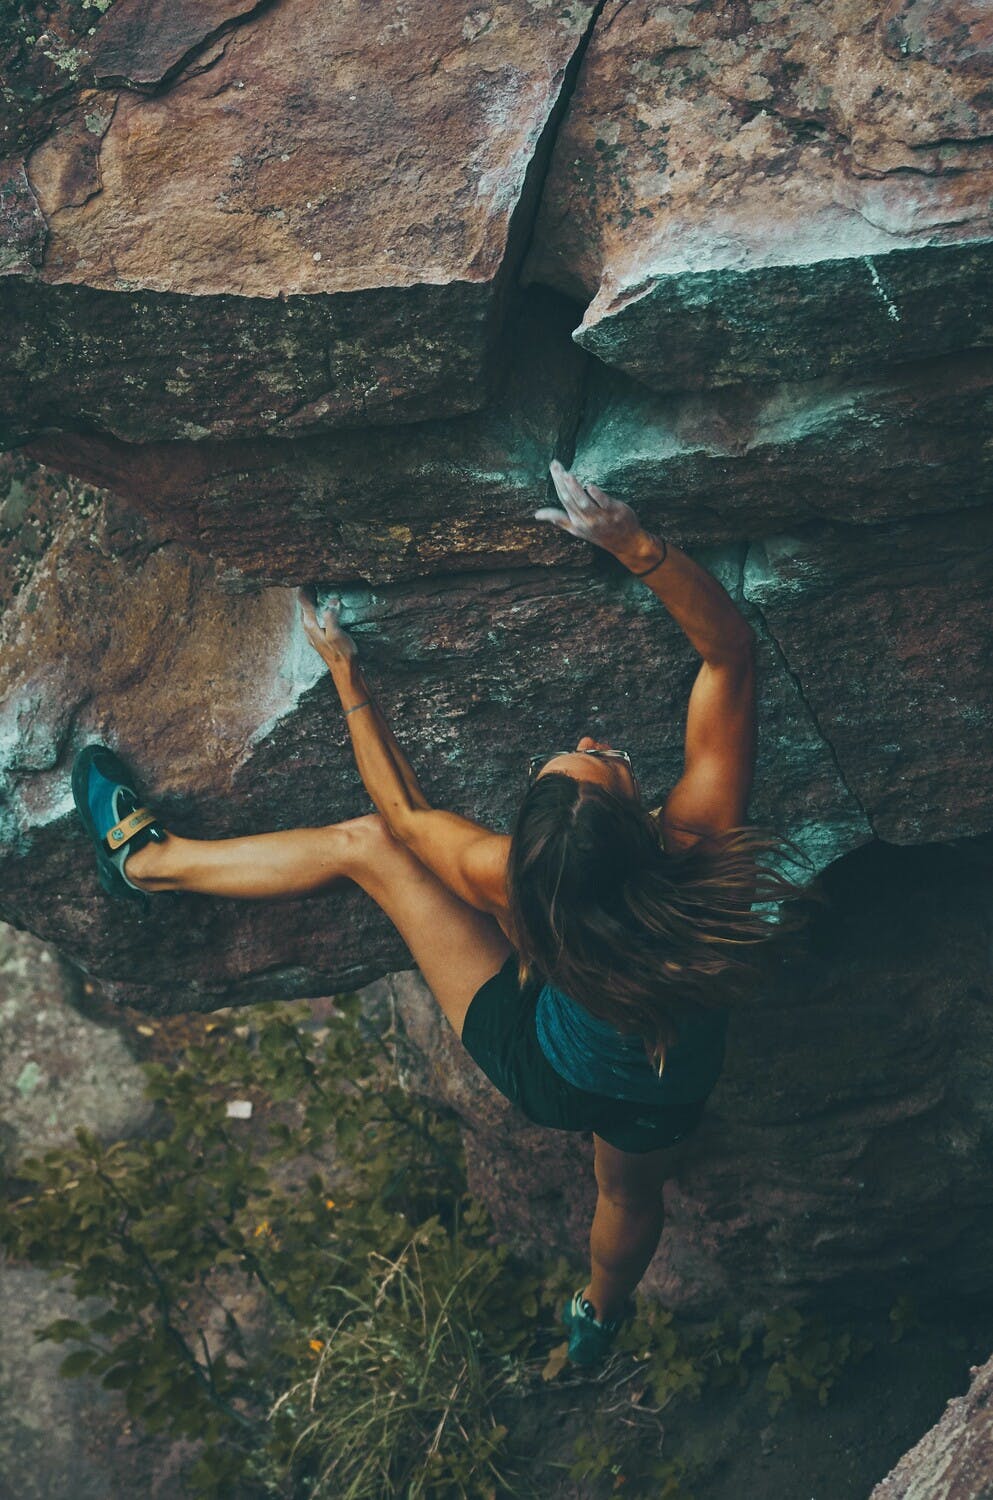 Una mujer escala una pared de rocas sin la ayuda de cuerdas, solo utilizando sus manos y pies.